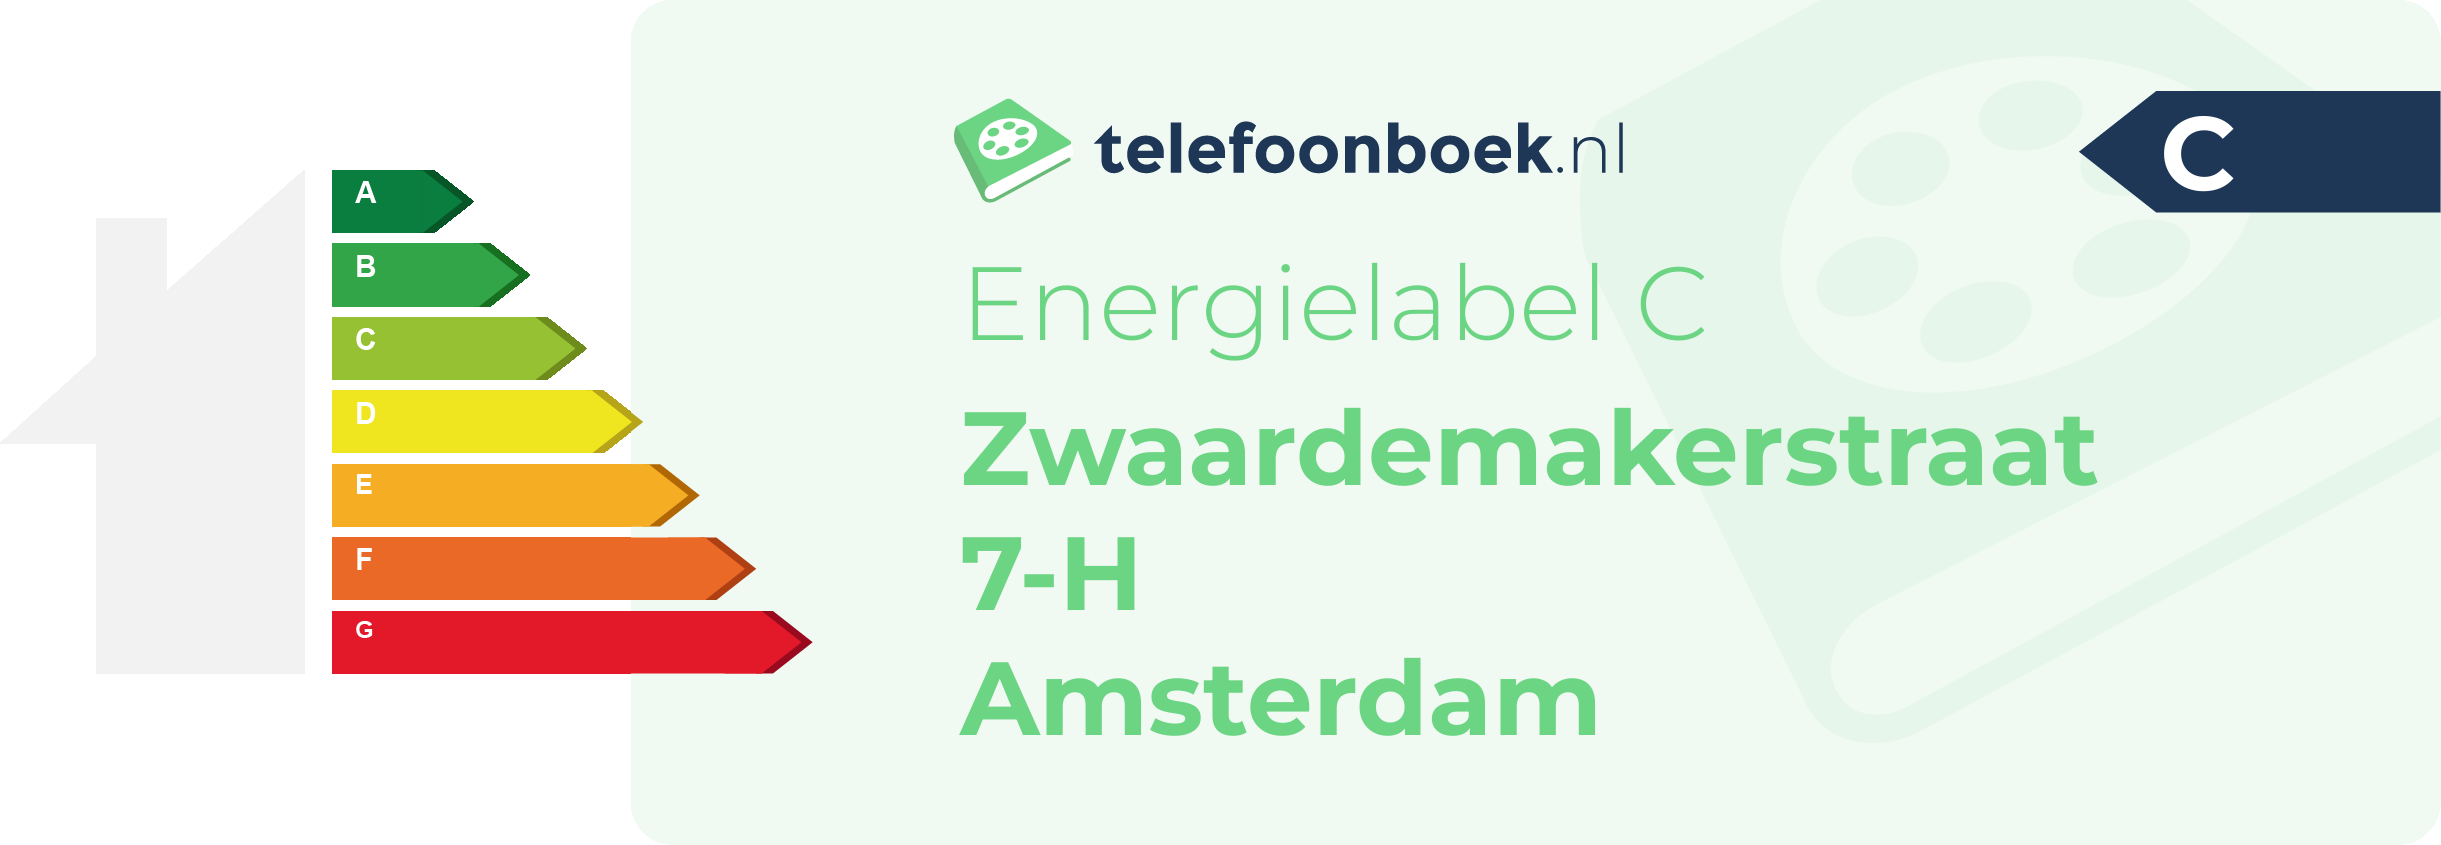 Energielabel Zwaardemakerstraat 7-H Amsterdam